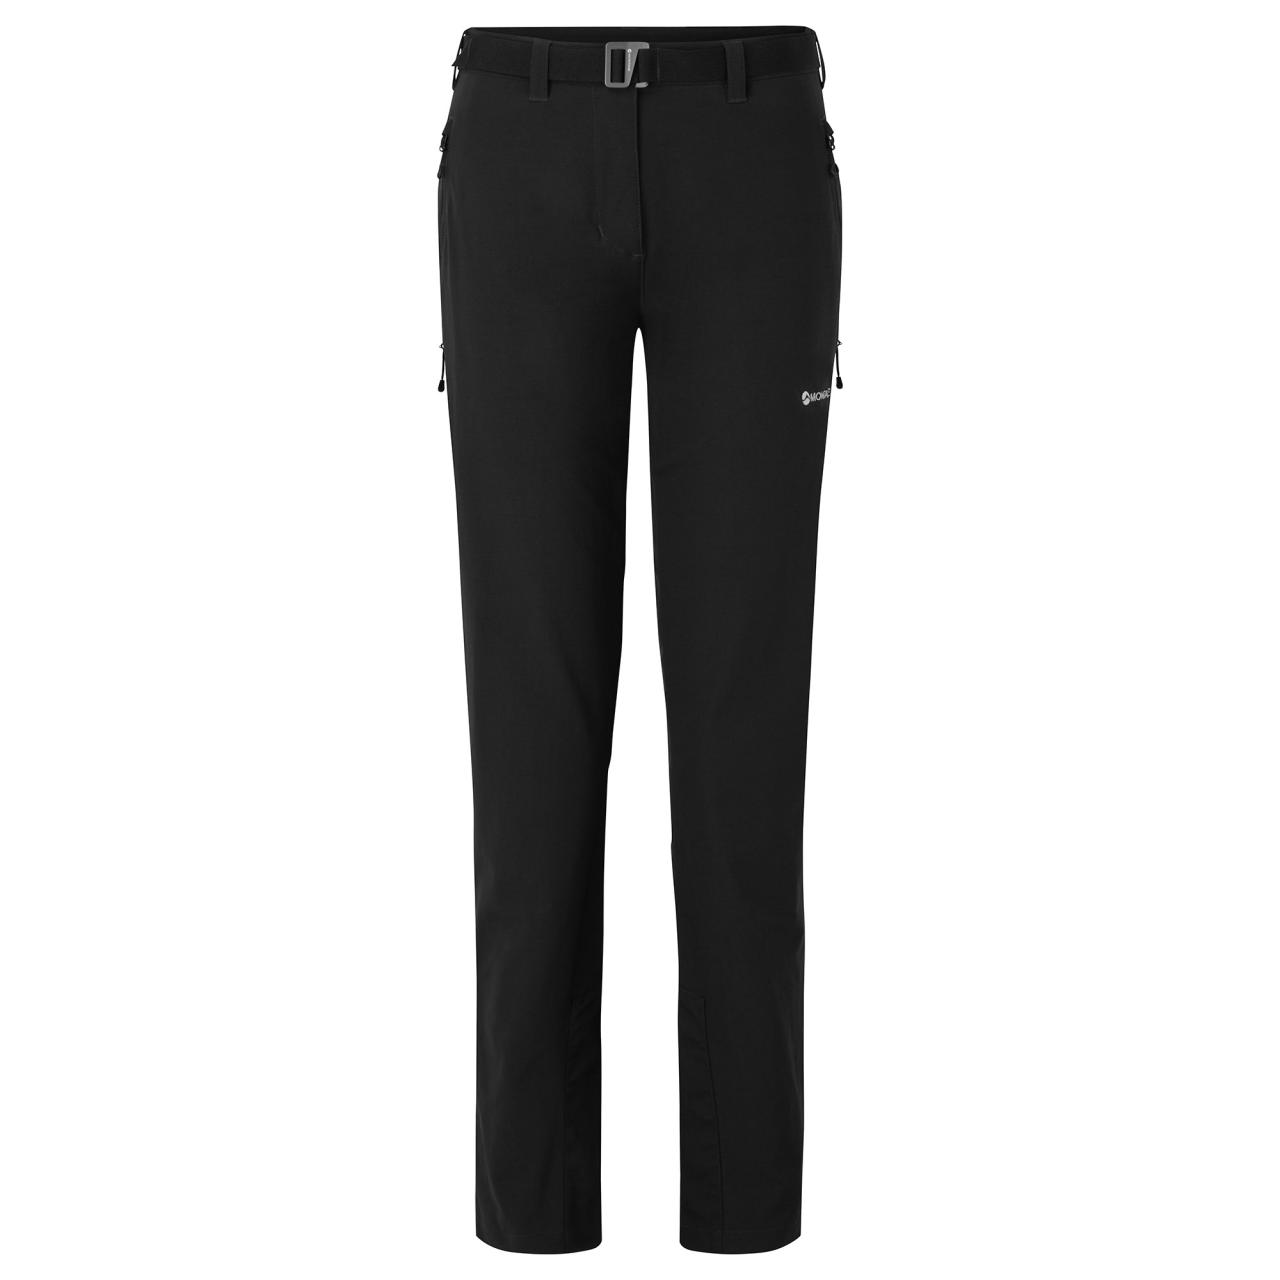 FEM TERRA STRETCH PANTS REG LEG-BLACK-UK10/S dámské kalhoty černé